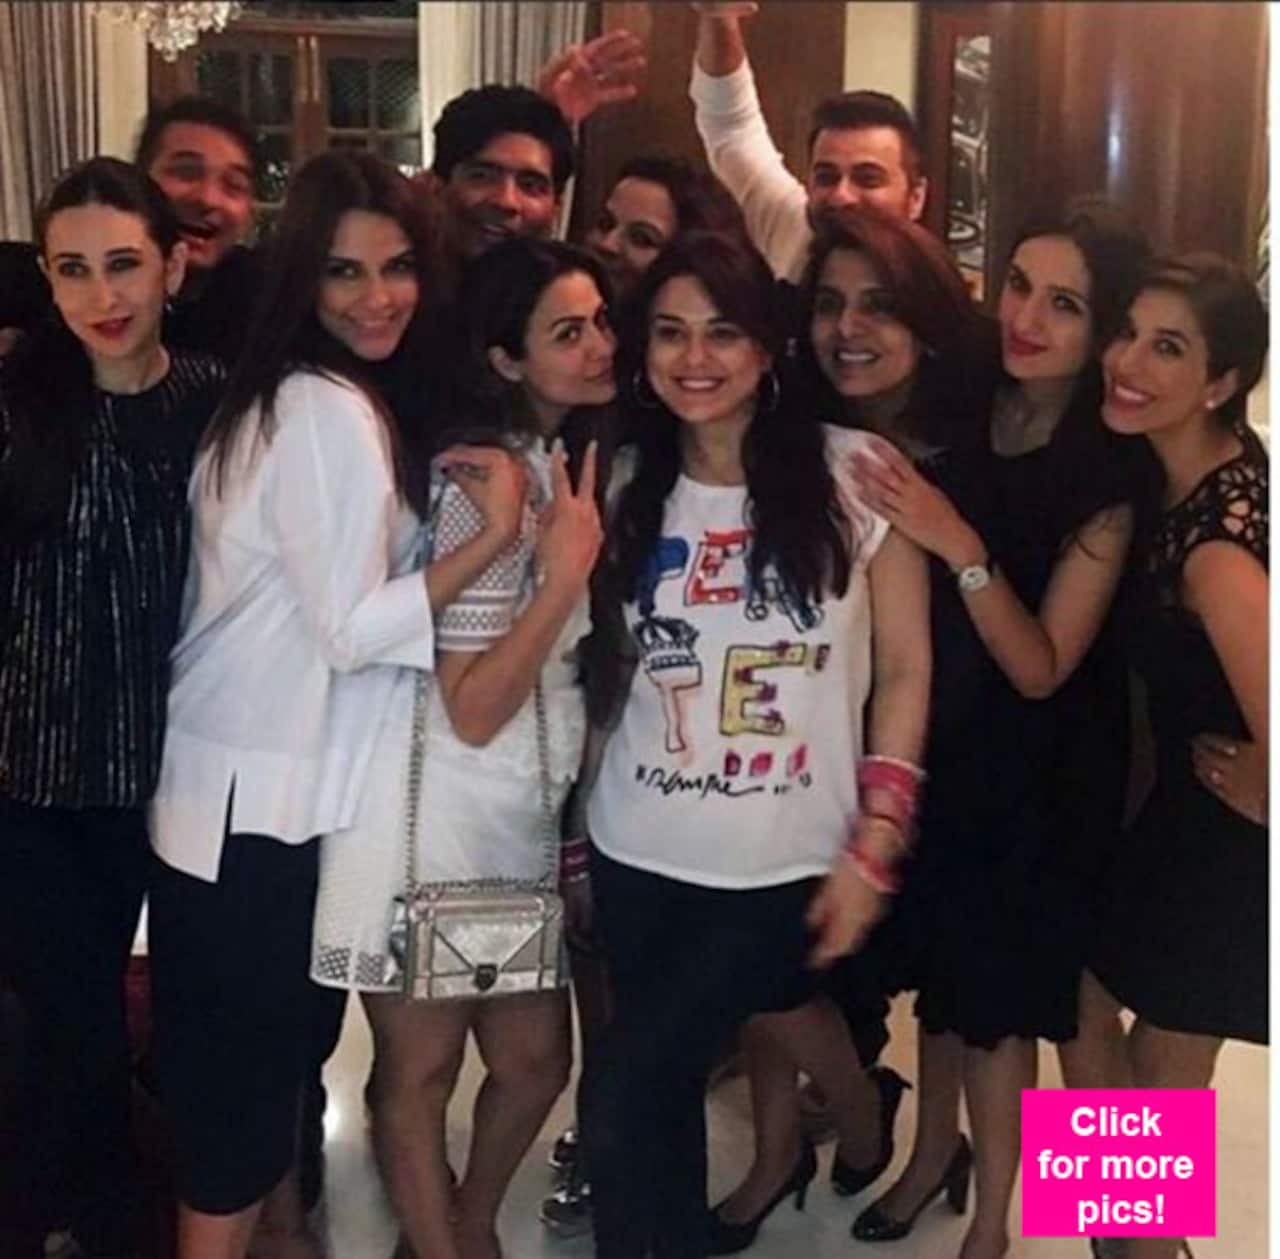 Preity Zinta, Karisma Kapoor, Neetu Kapoor PARTY HARD at Manish Malhotra's residence - view pics!